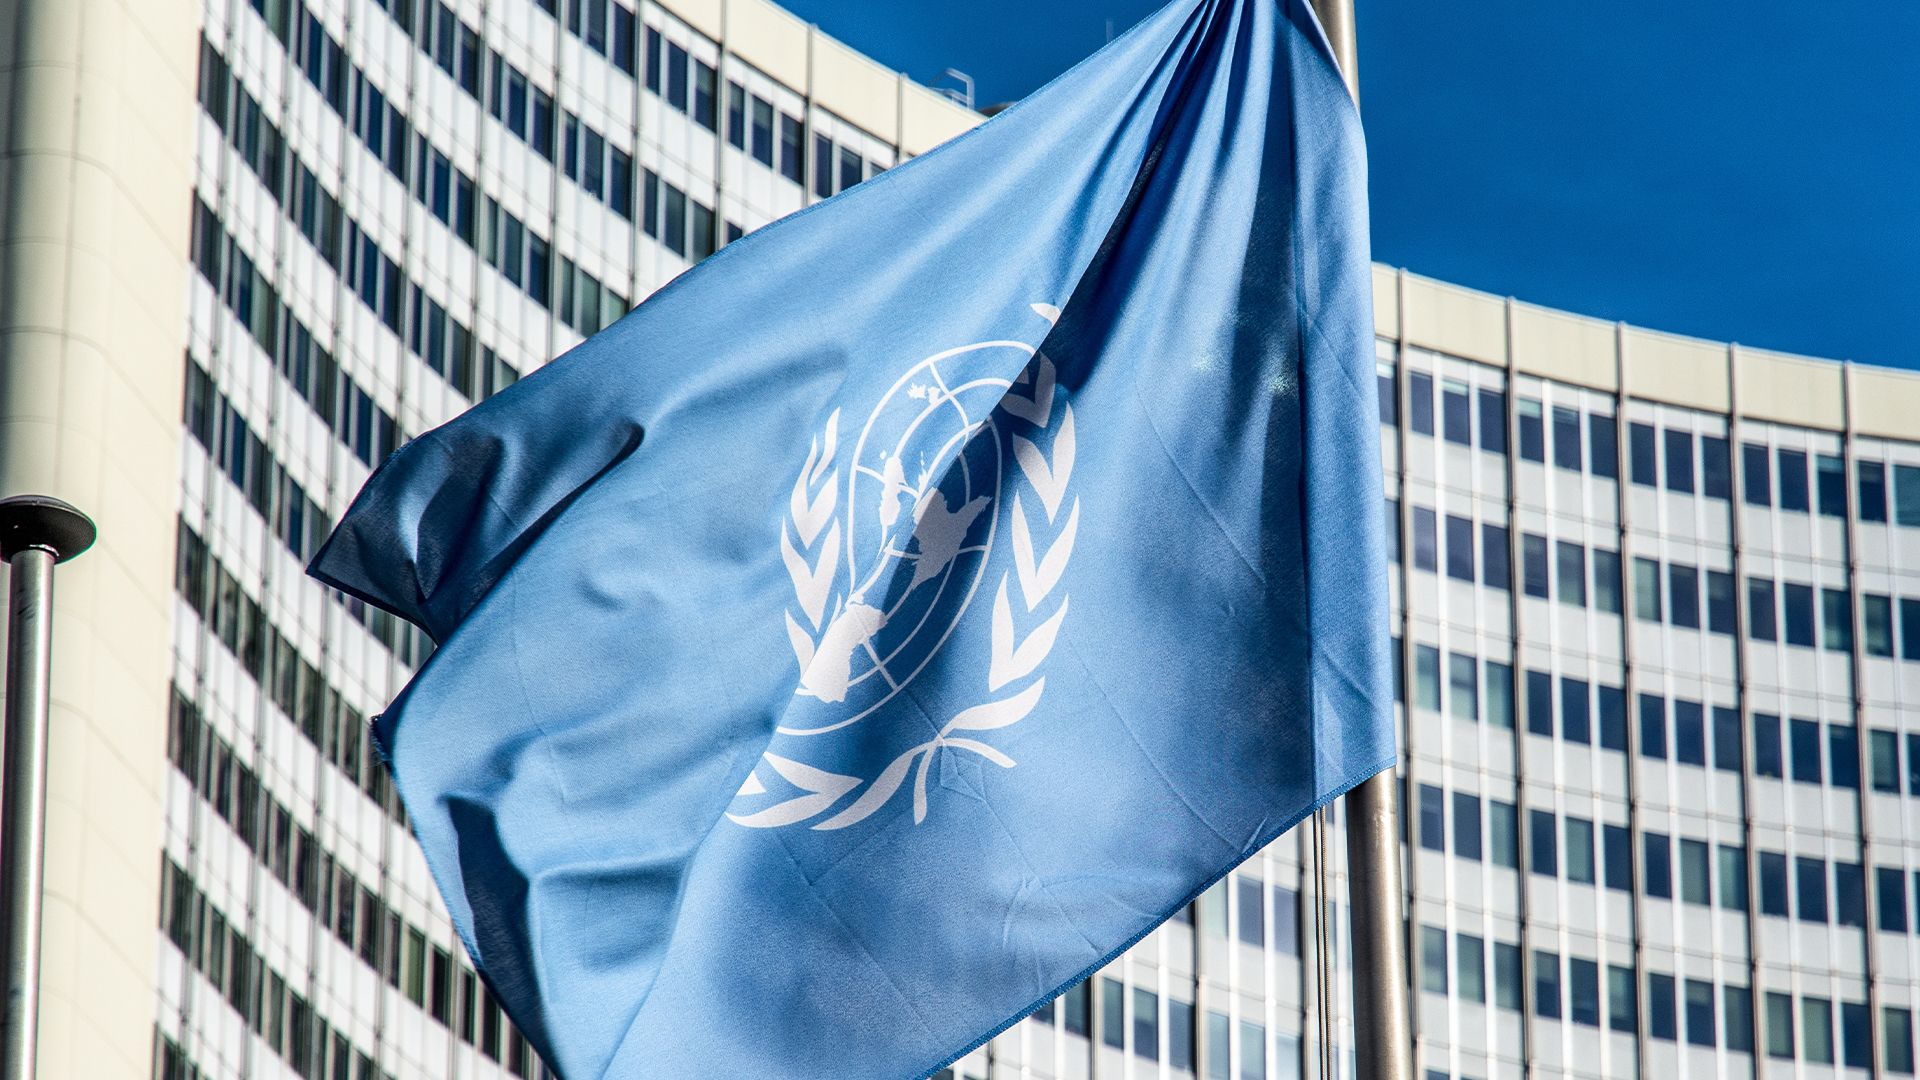 ООН: Гутерреш лично проследит за выдачей виз США дипломатам